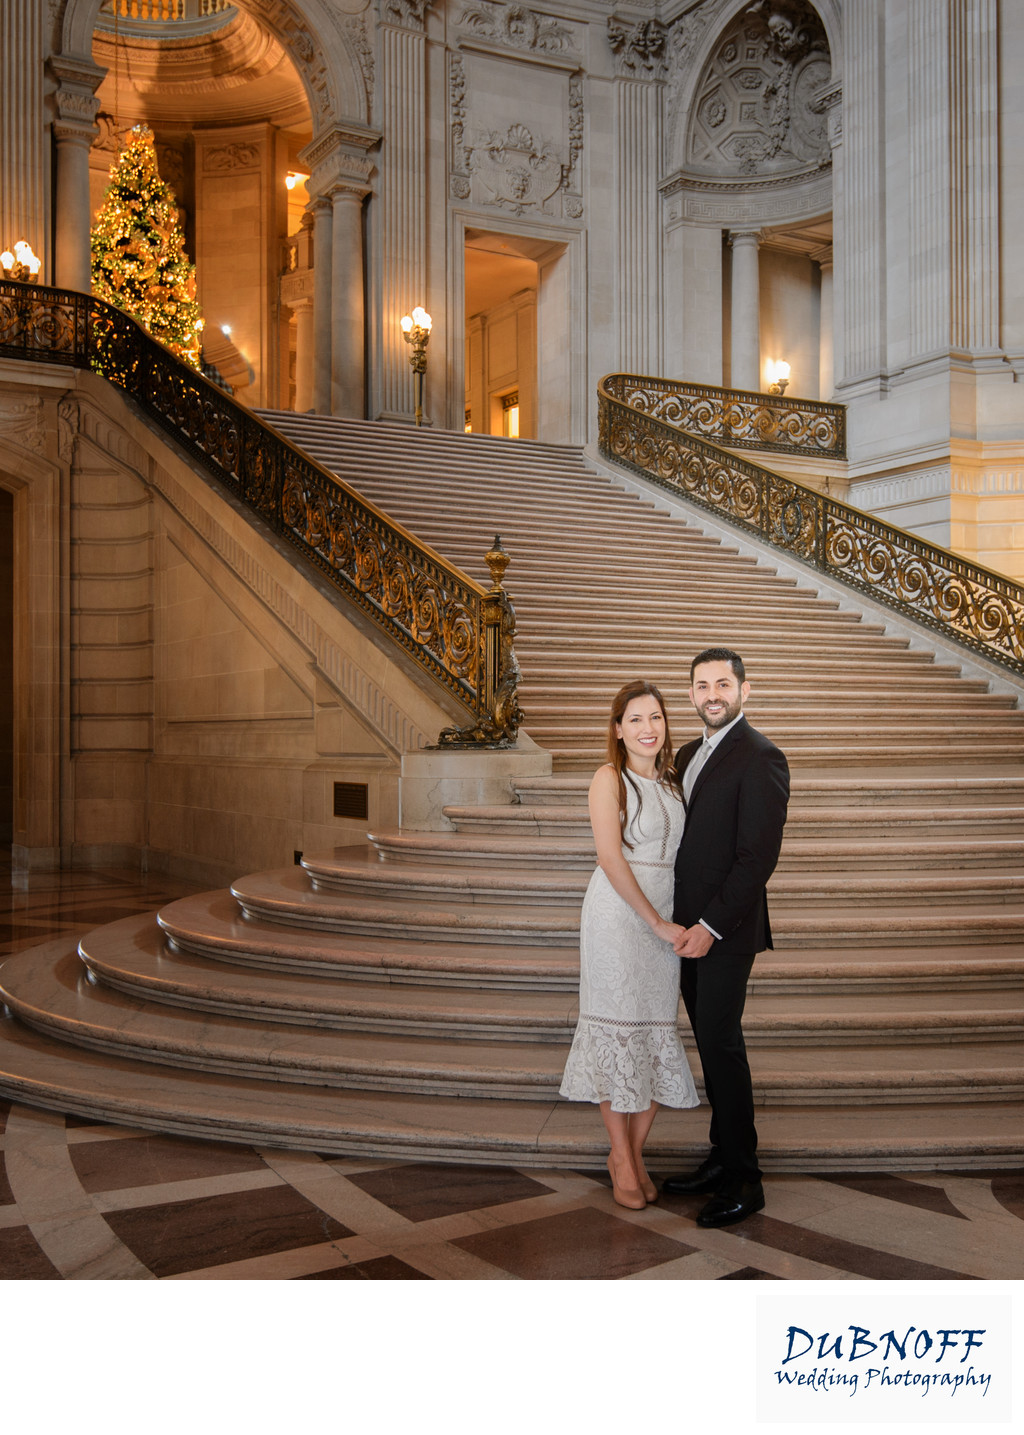 San Francisco City Hall Wedding Photographer - Christmas Time